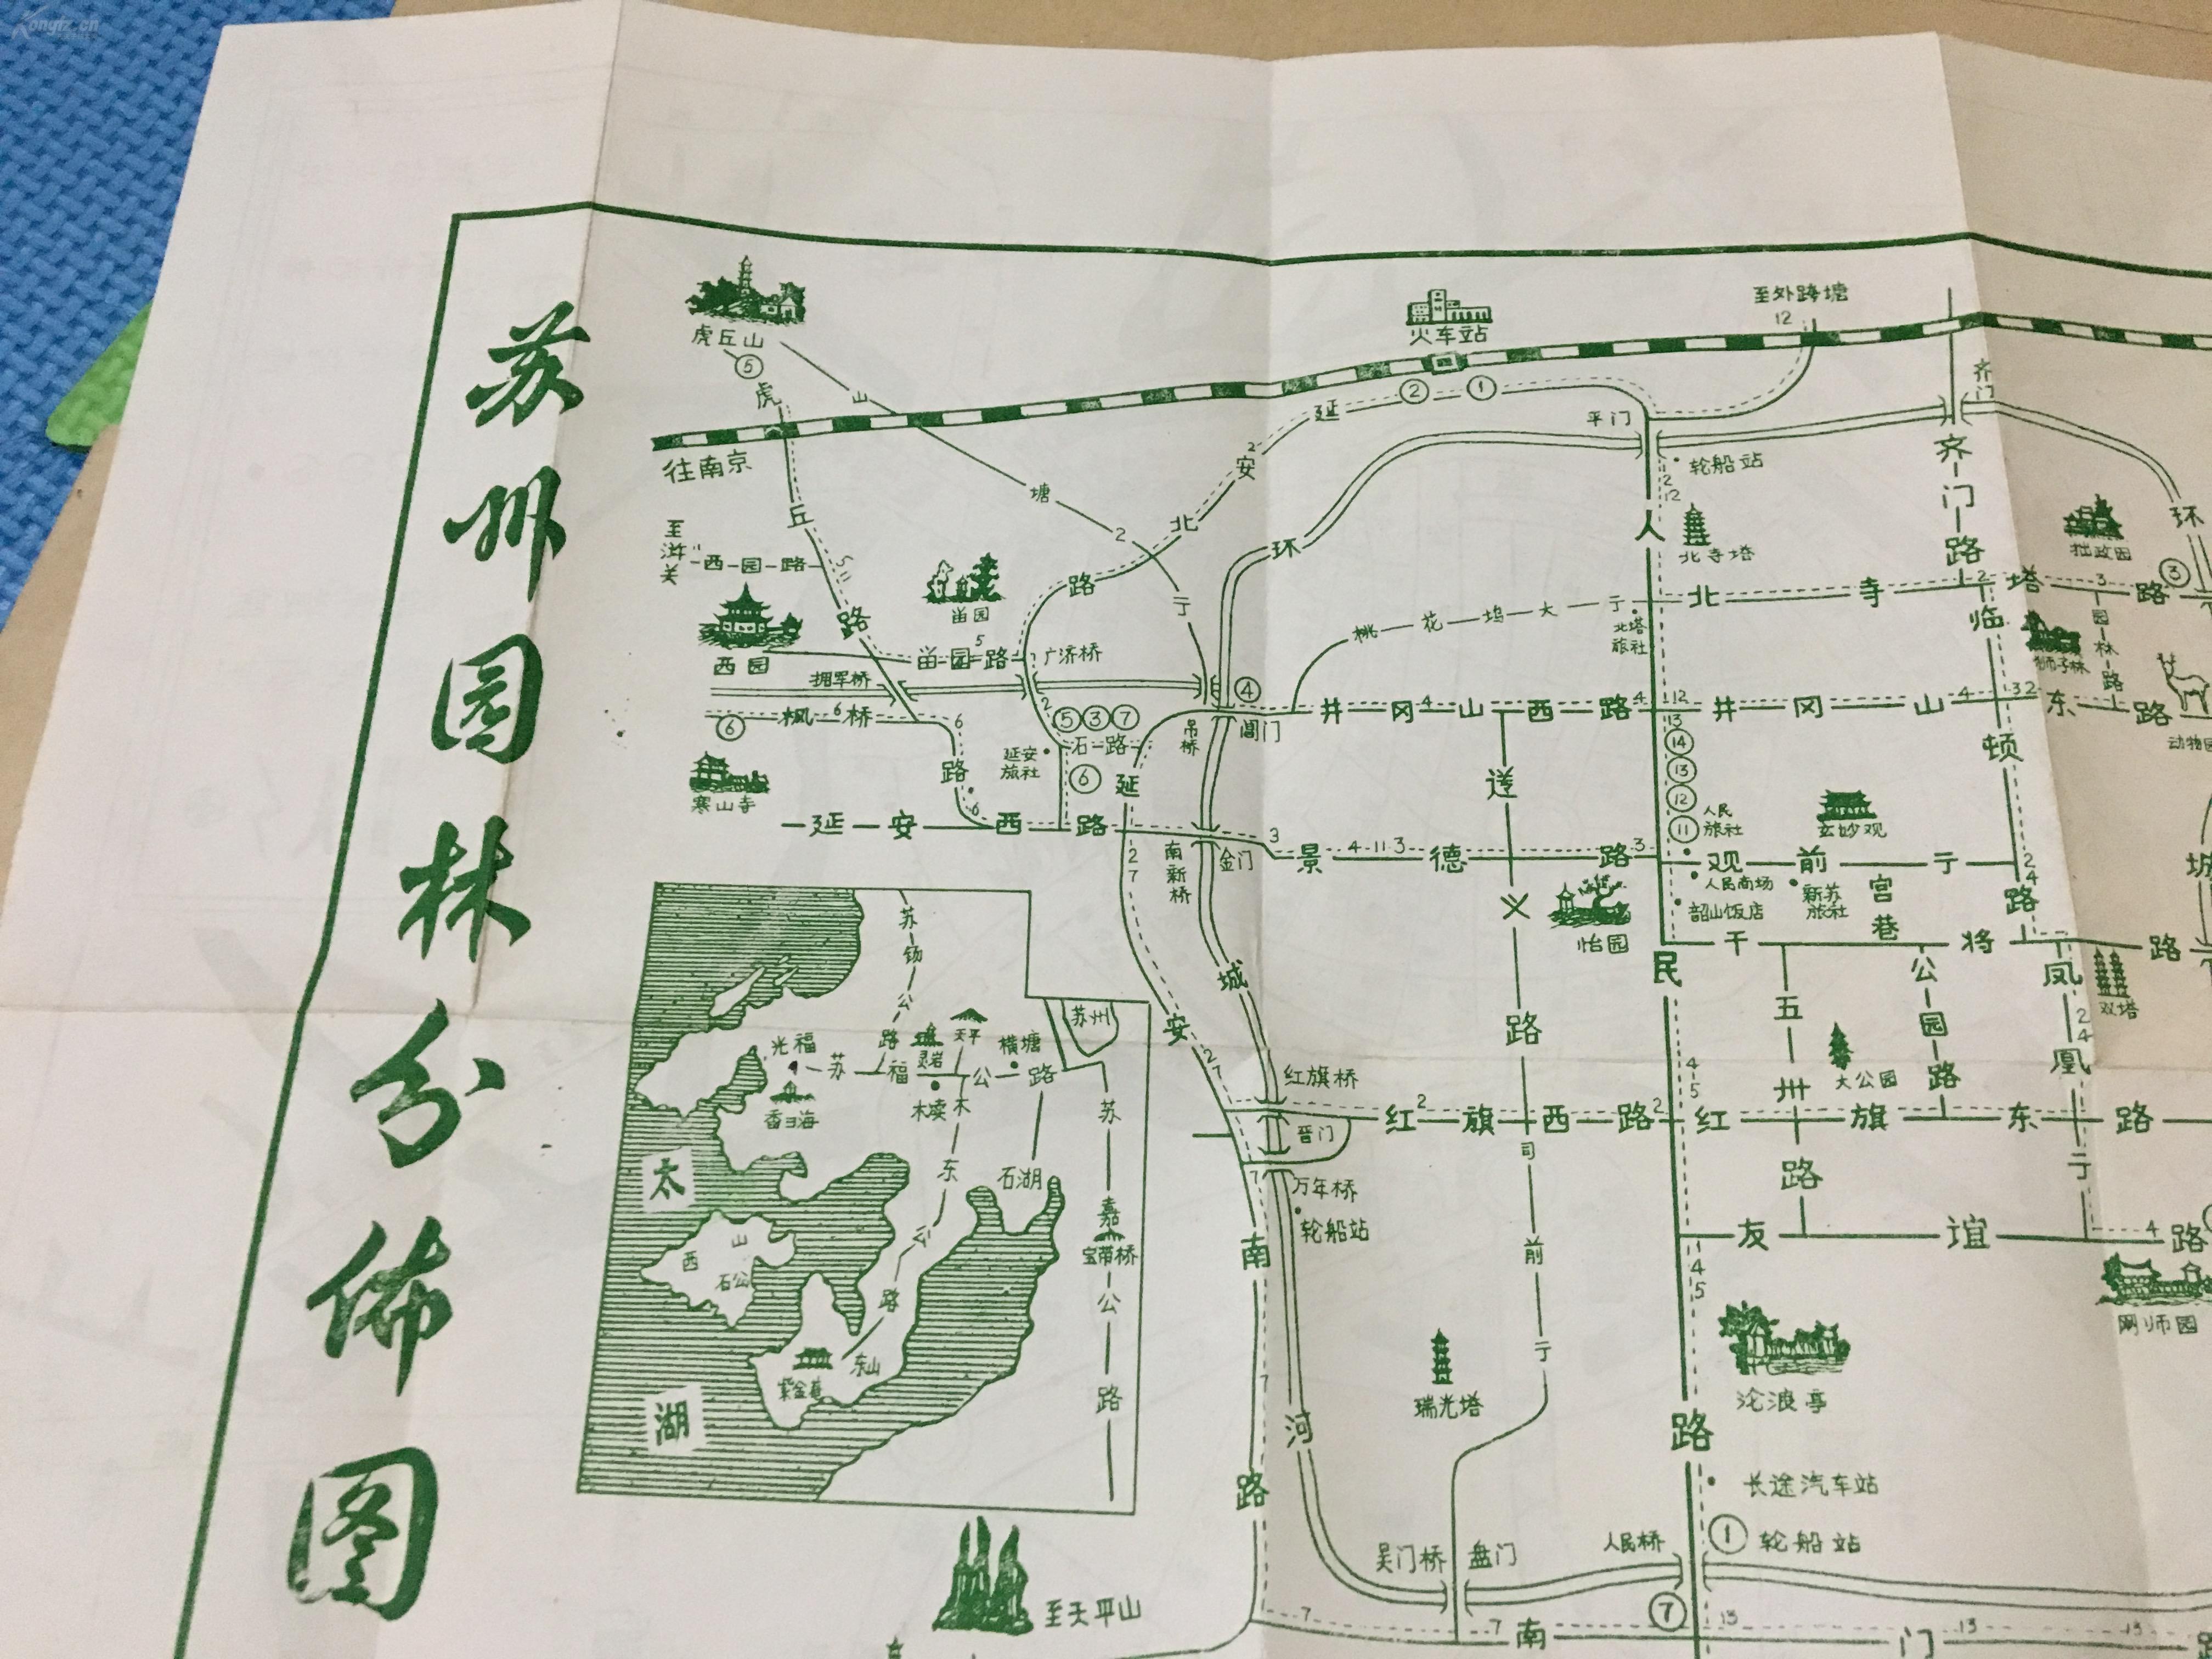 中国地级市地图_中国地图地级市_中国市级地图清晰